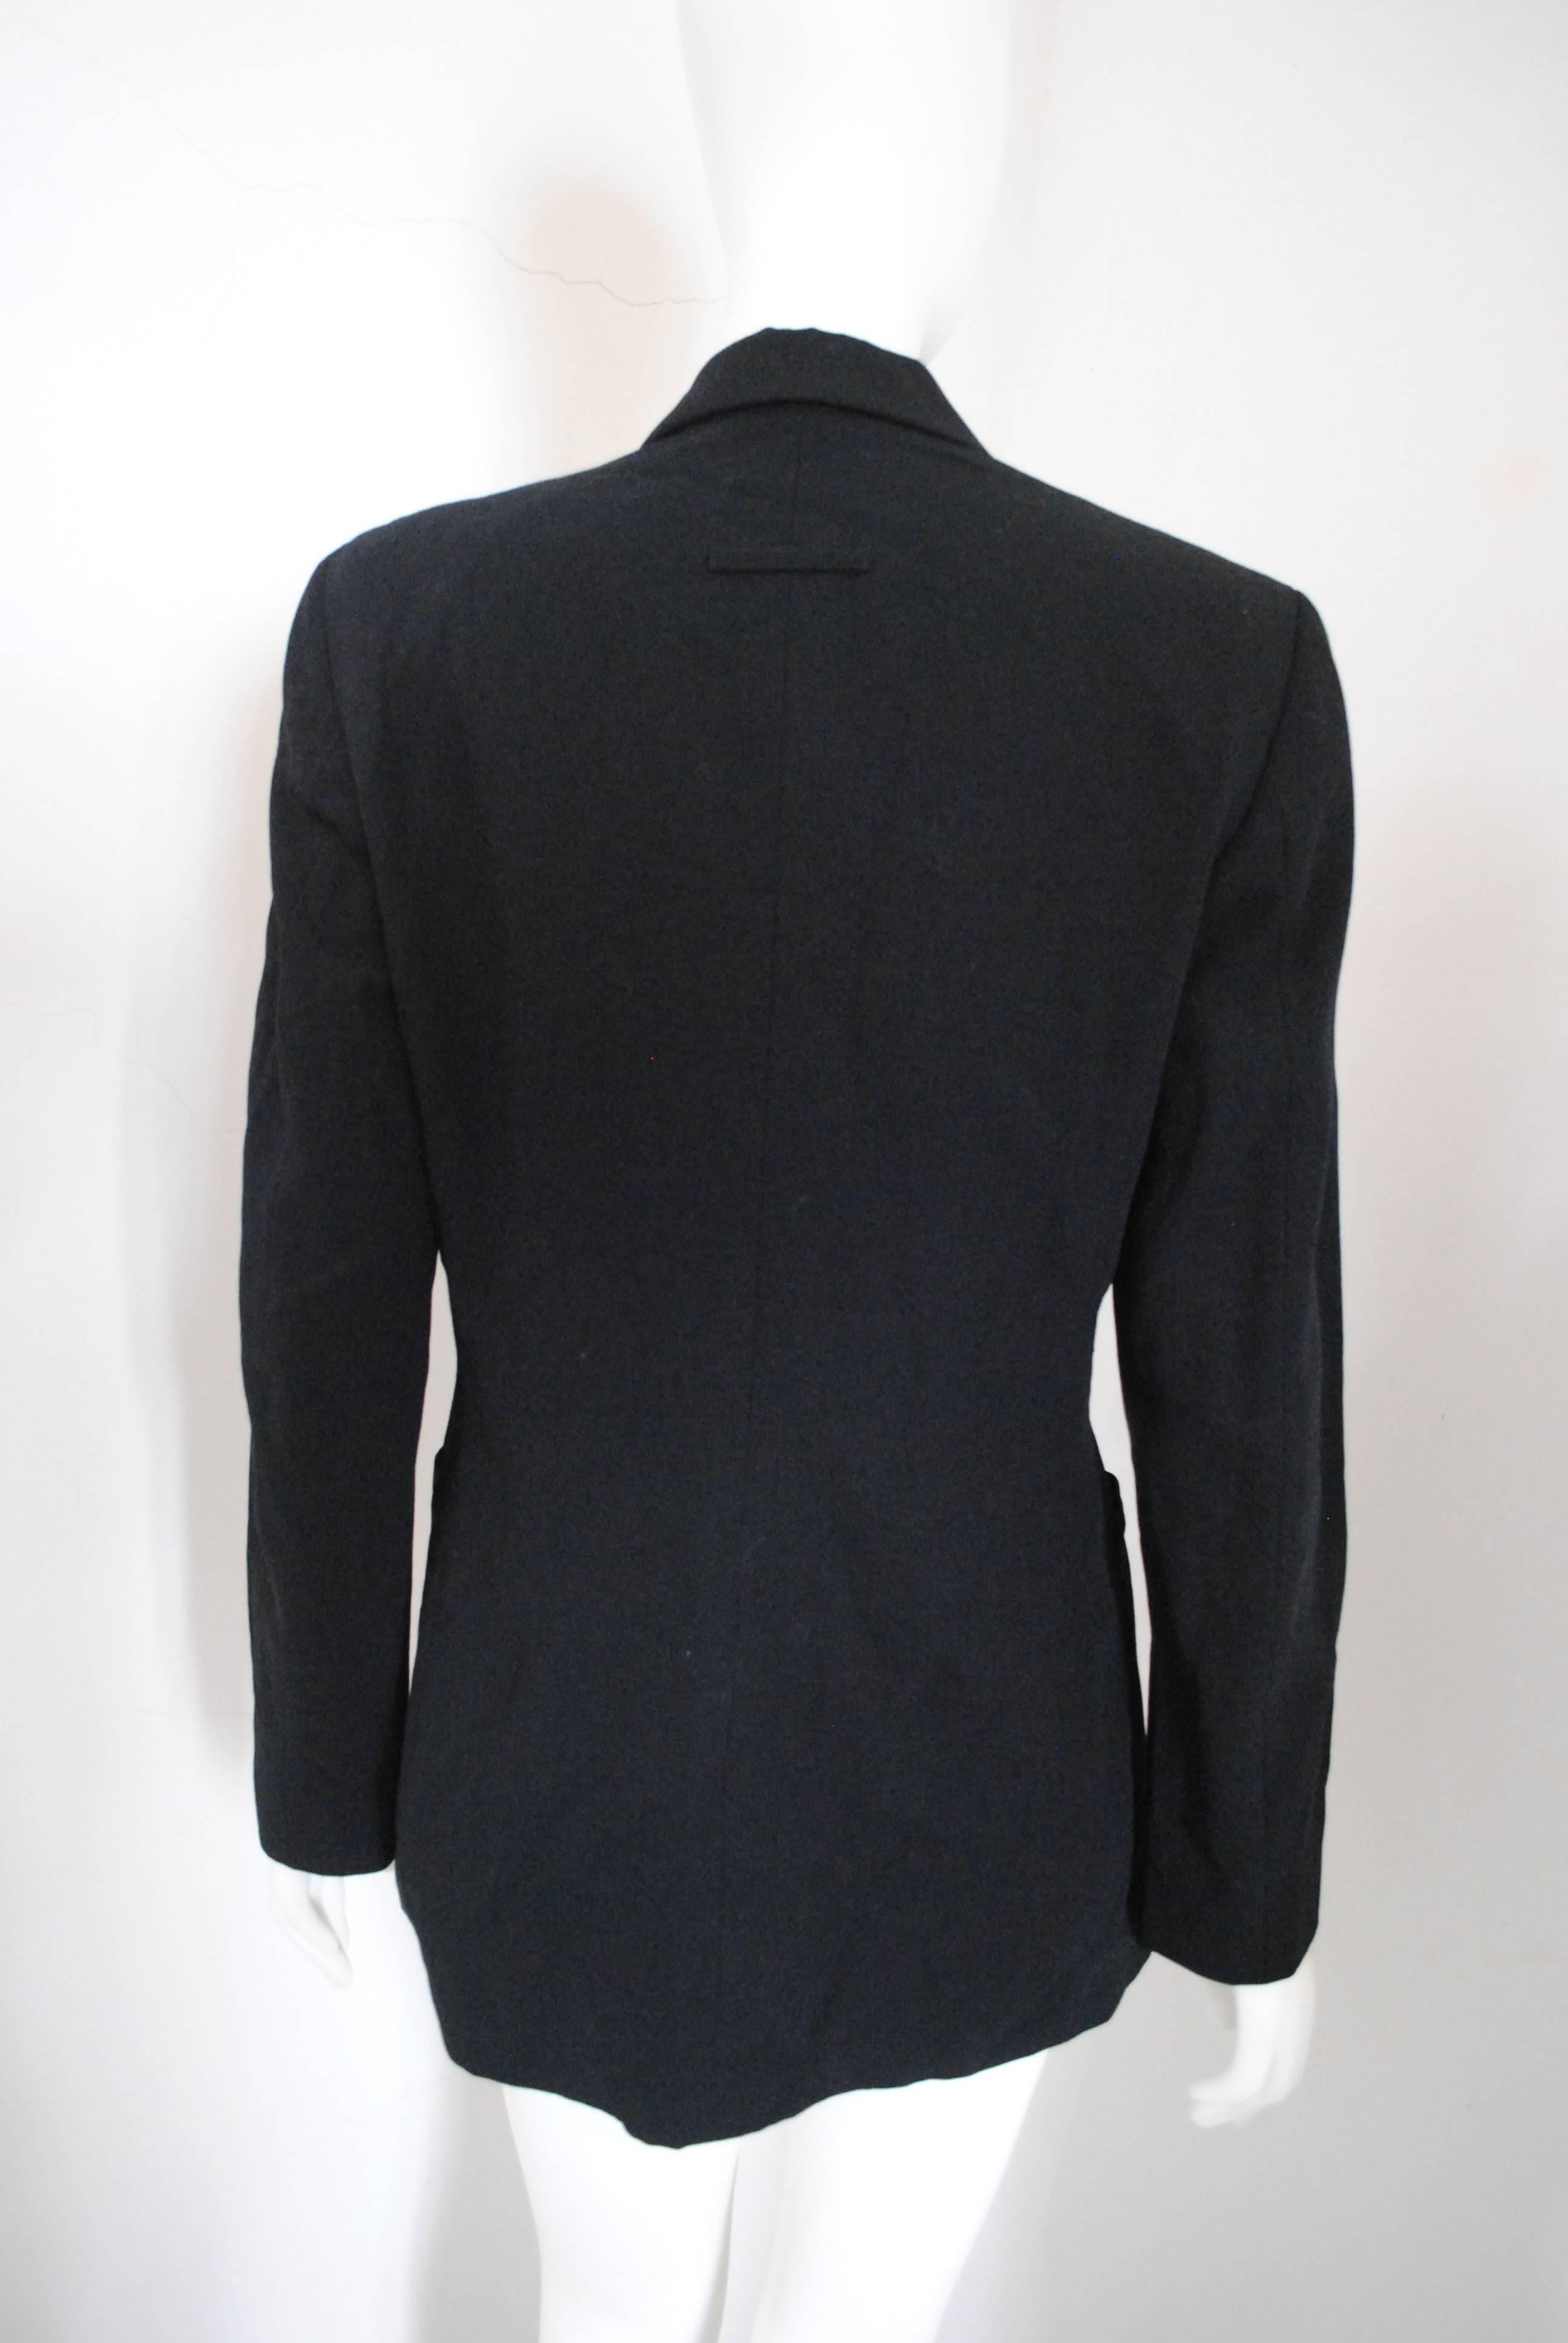 1997 - 1998 Rare Jean Paul Gaultier Black Wool Jacket For Sale 2